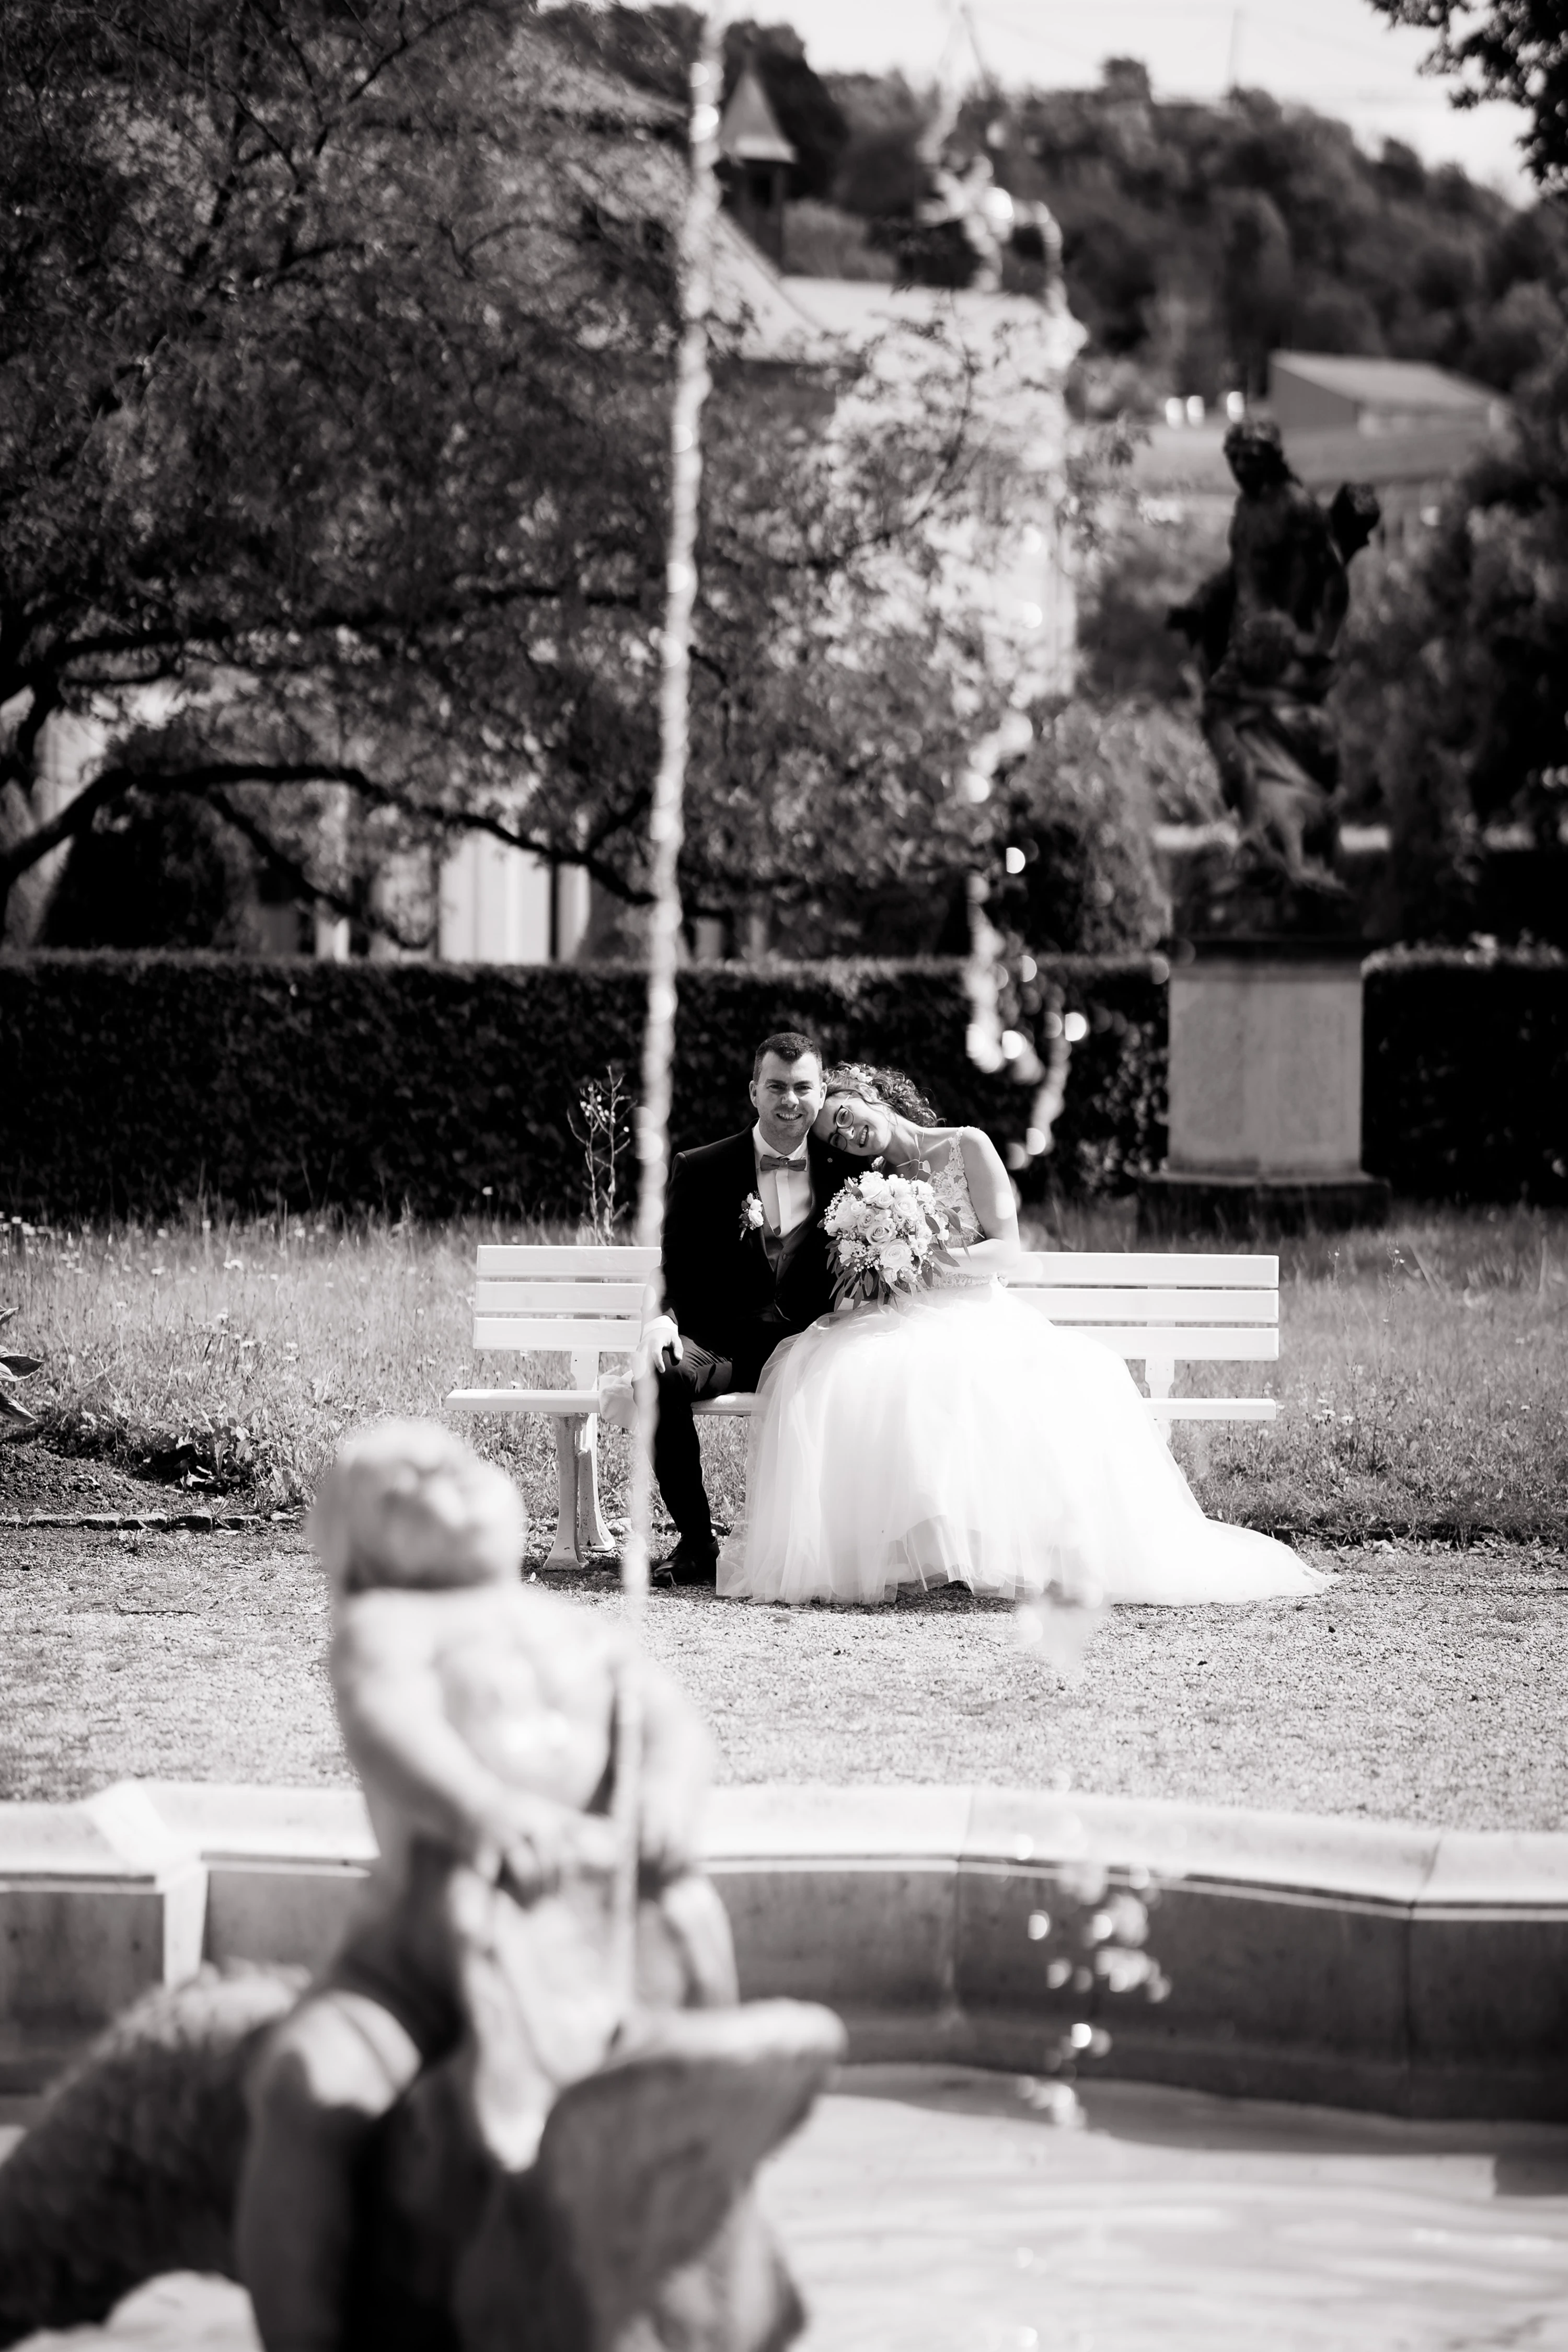 Schwarz-Weiß Hochkantaufnahme des Brautpaares, das auf einer Bank sitzt.